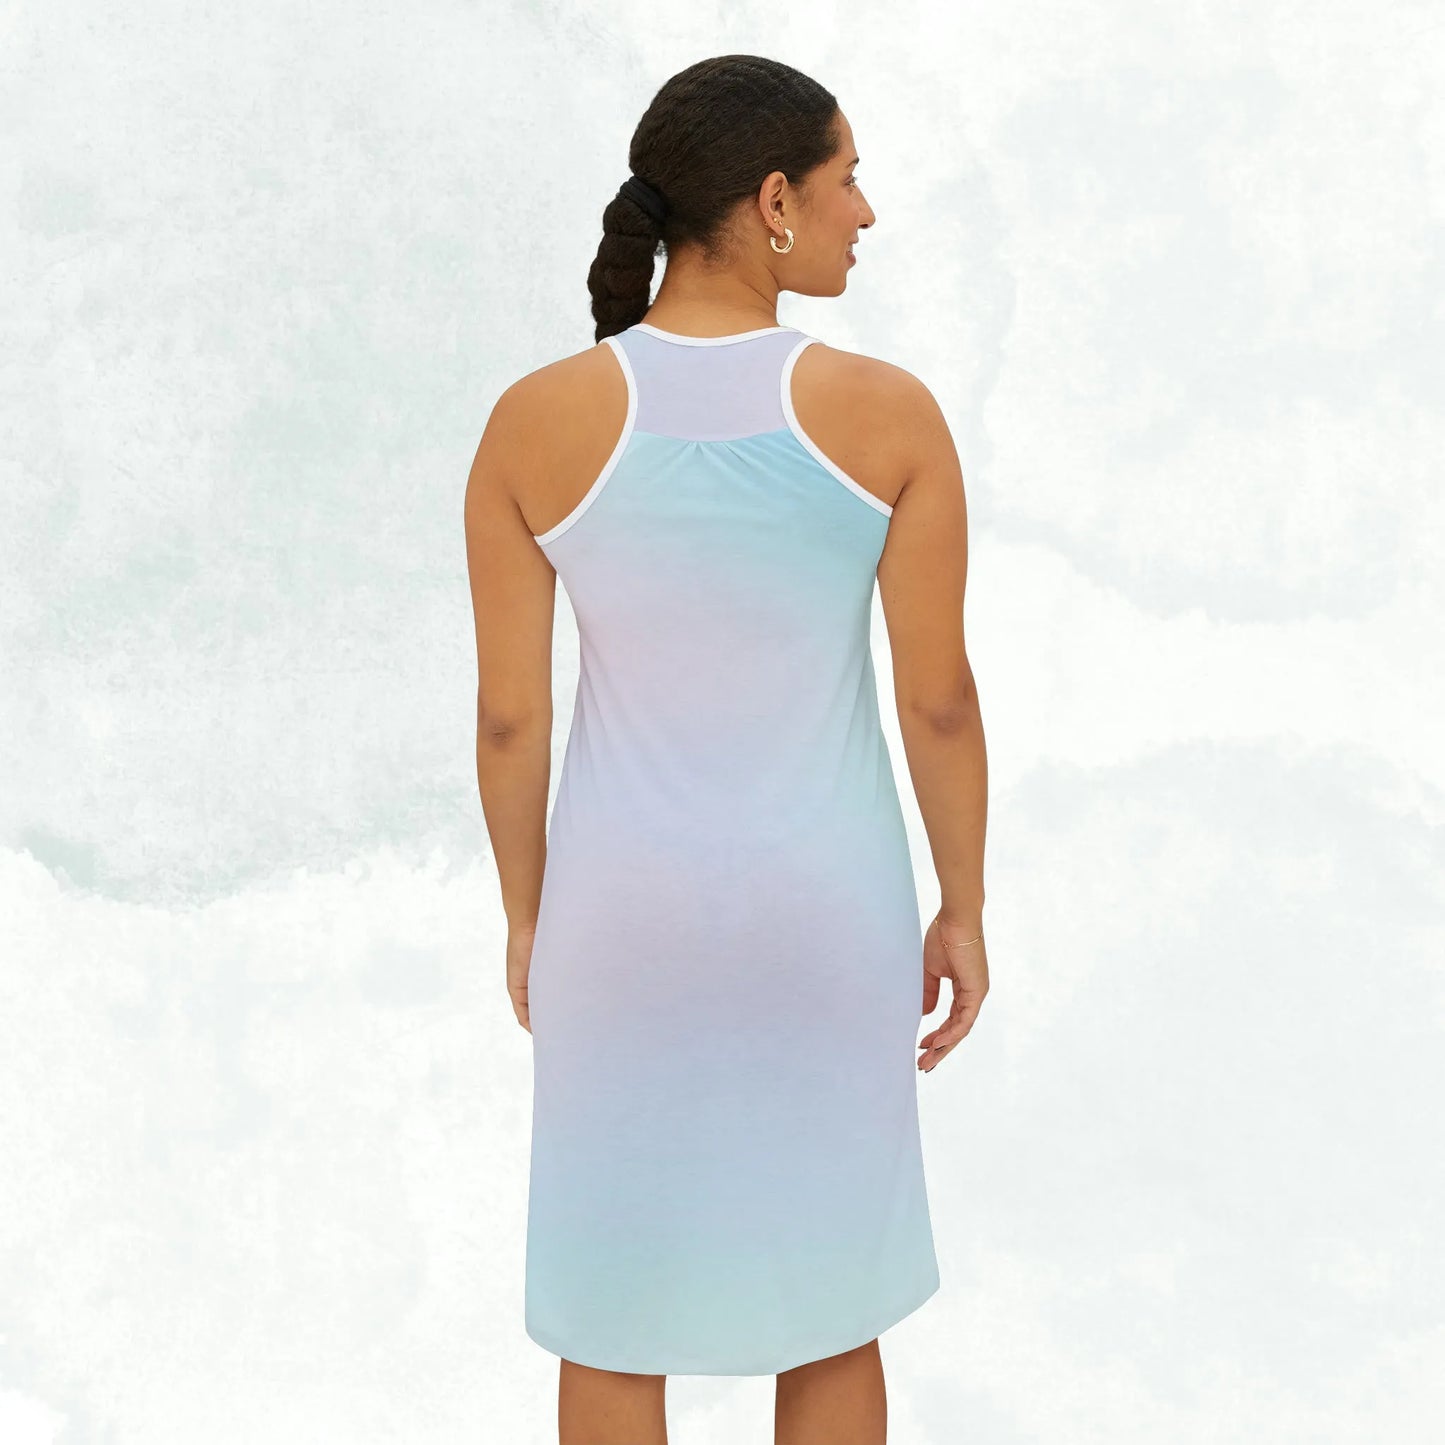 Pastel Women's Racerback Dress - Pastel Spring Dress - Pastel Dress For Women